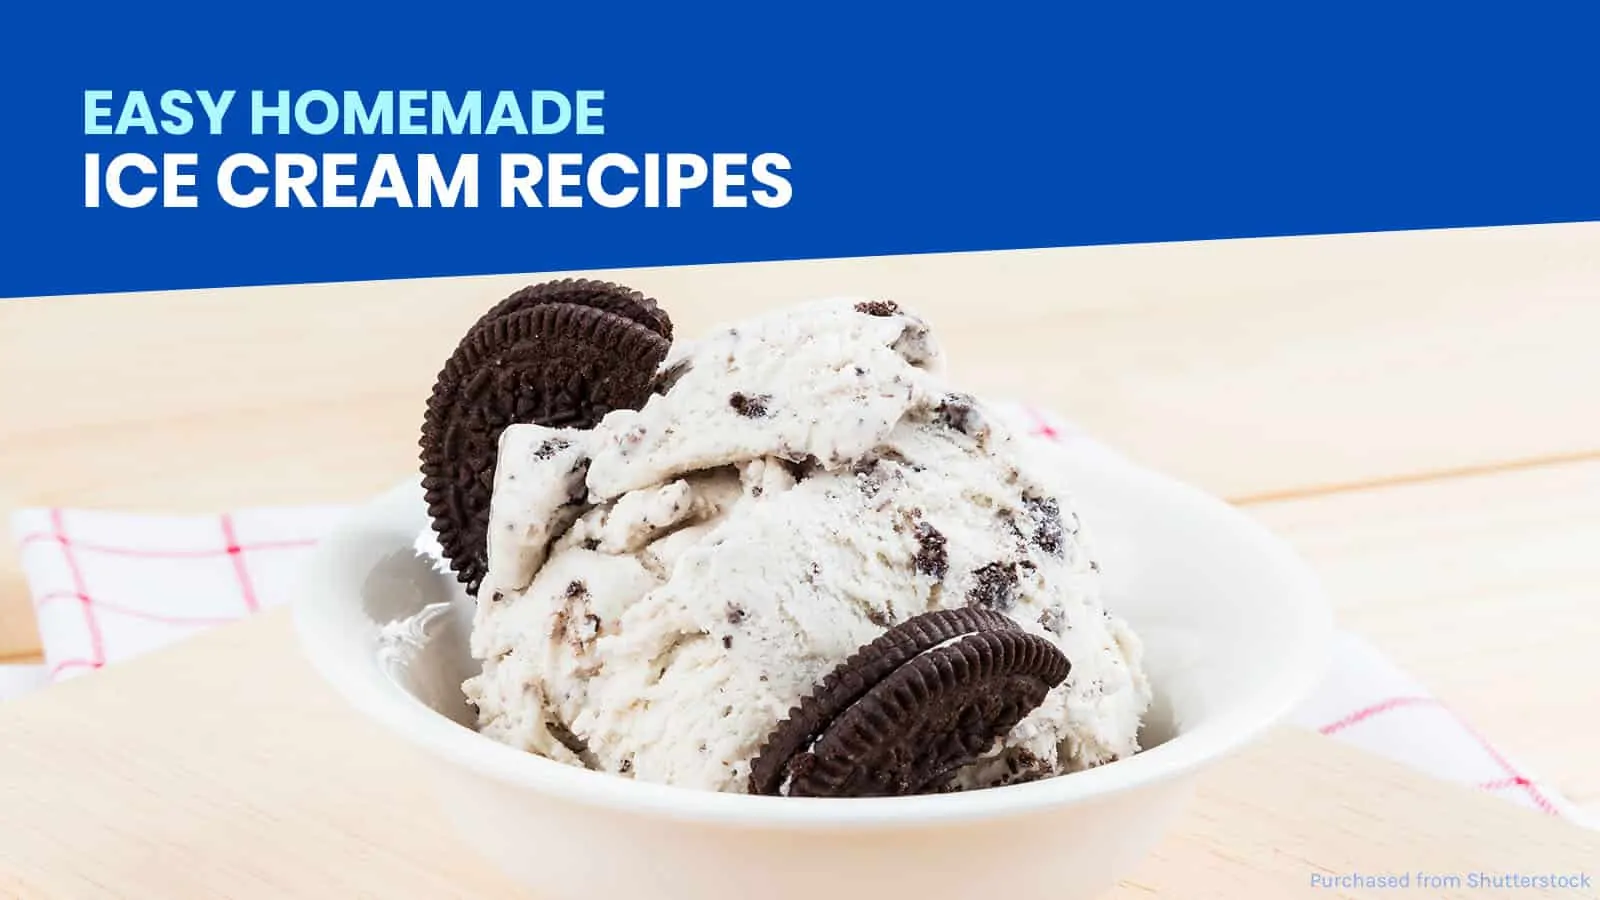 你可以在家里轻松尝试的10种冰淇淋食谱!